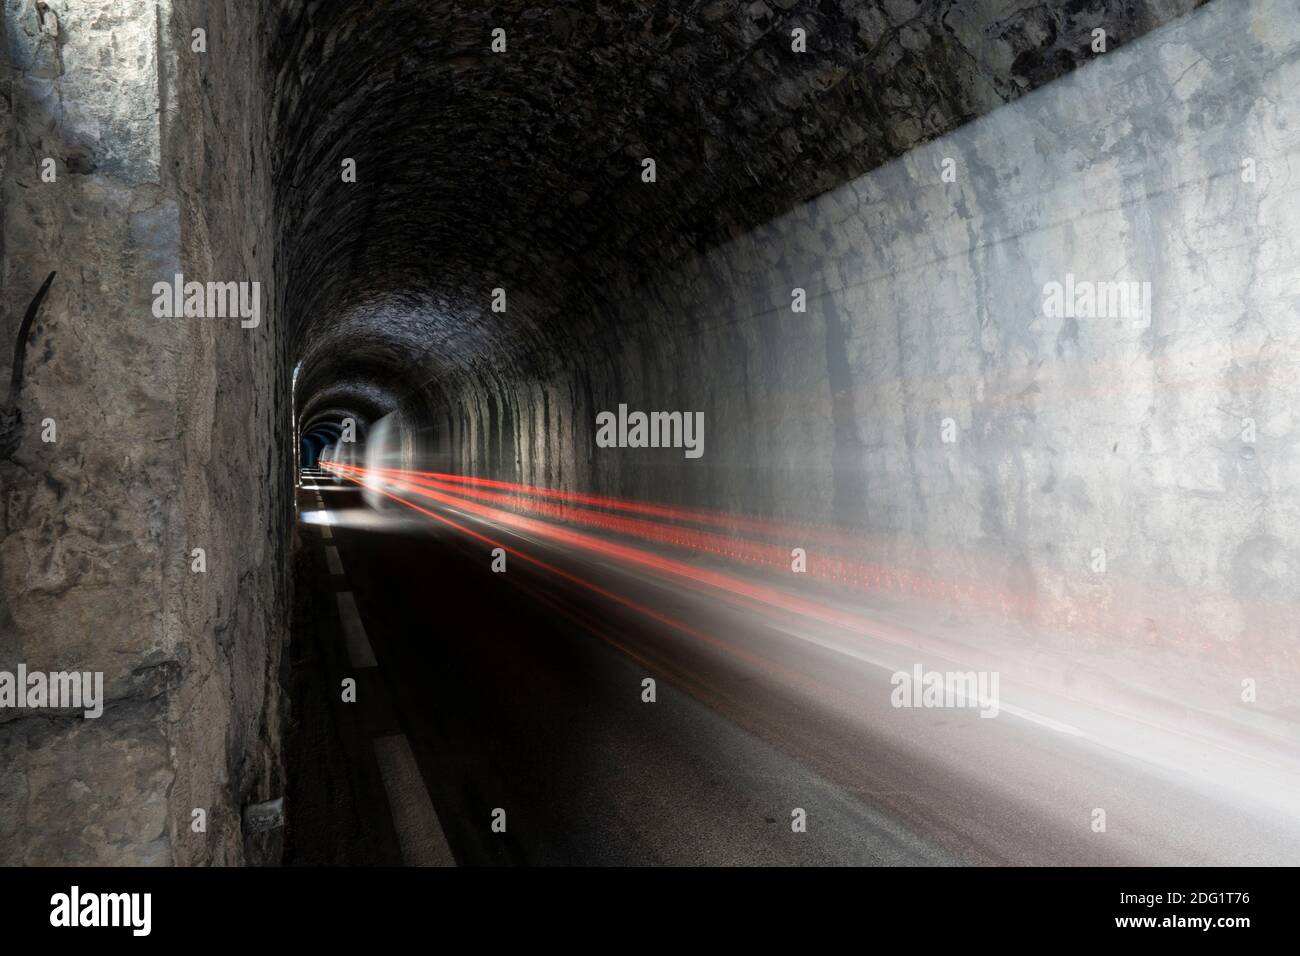 Longue exposition, piste lumineuse de voiture dans un tunnel de montagne sombre Banque D'Images